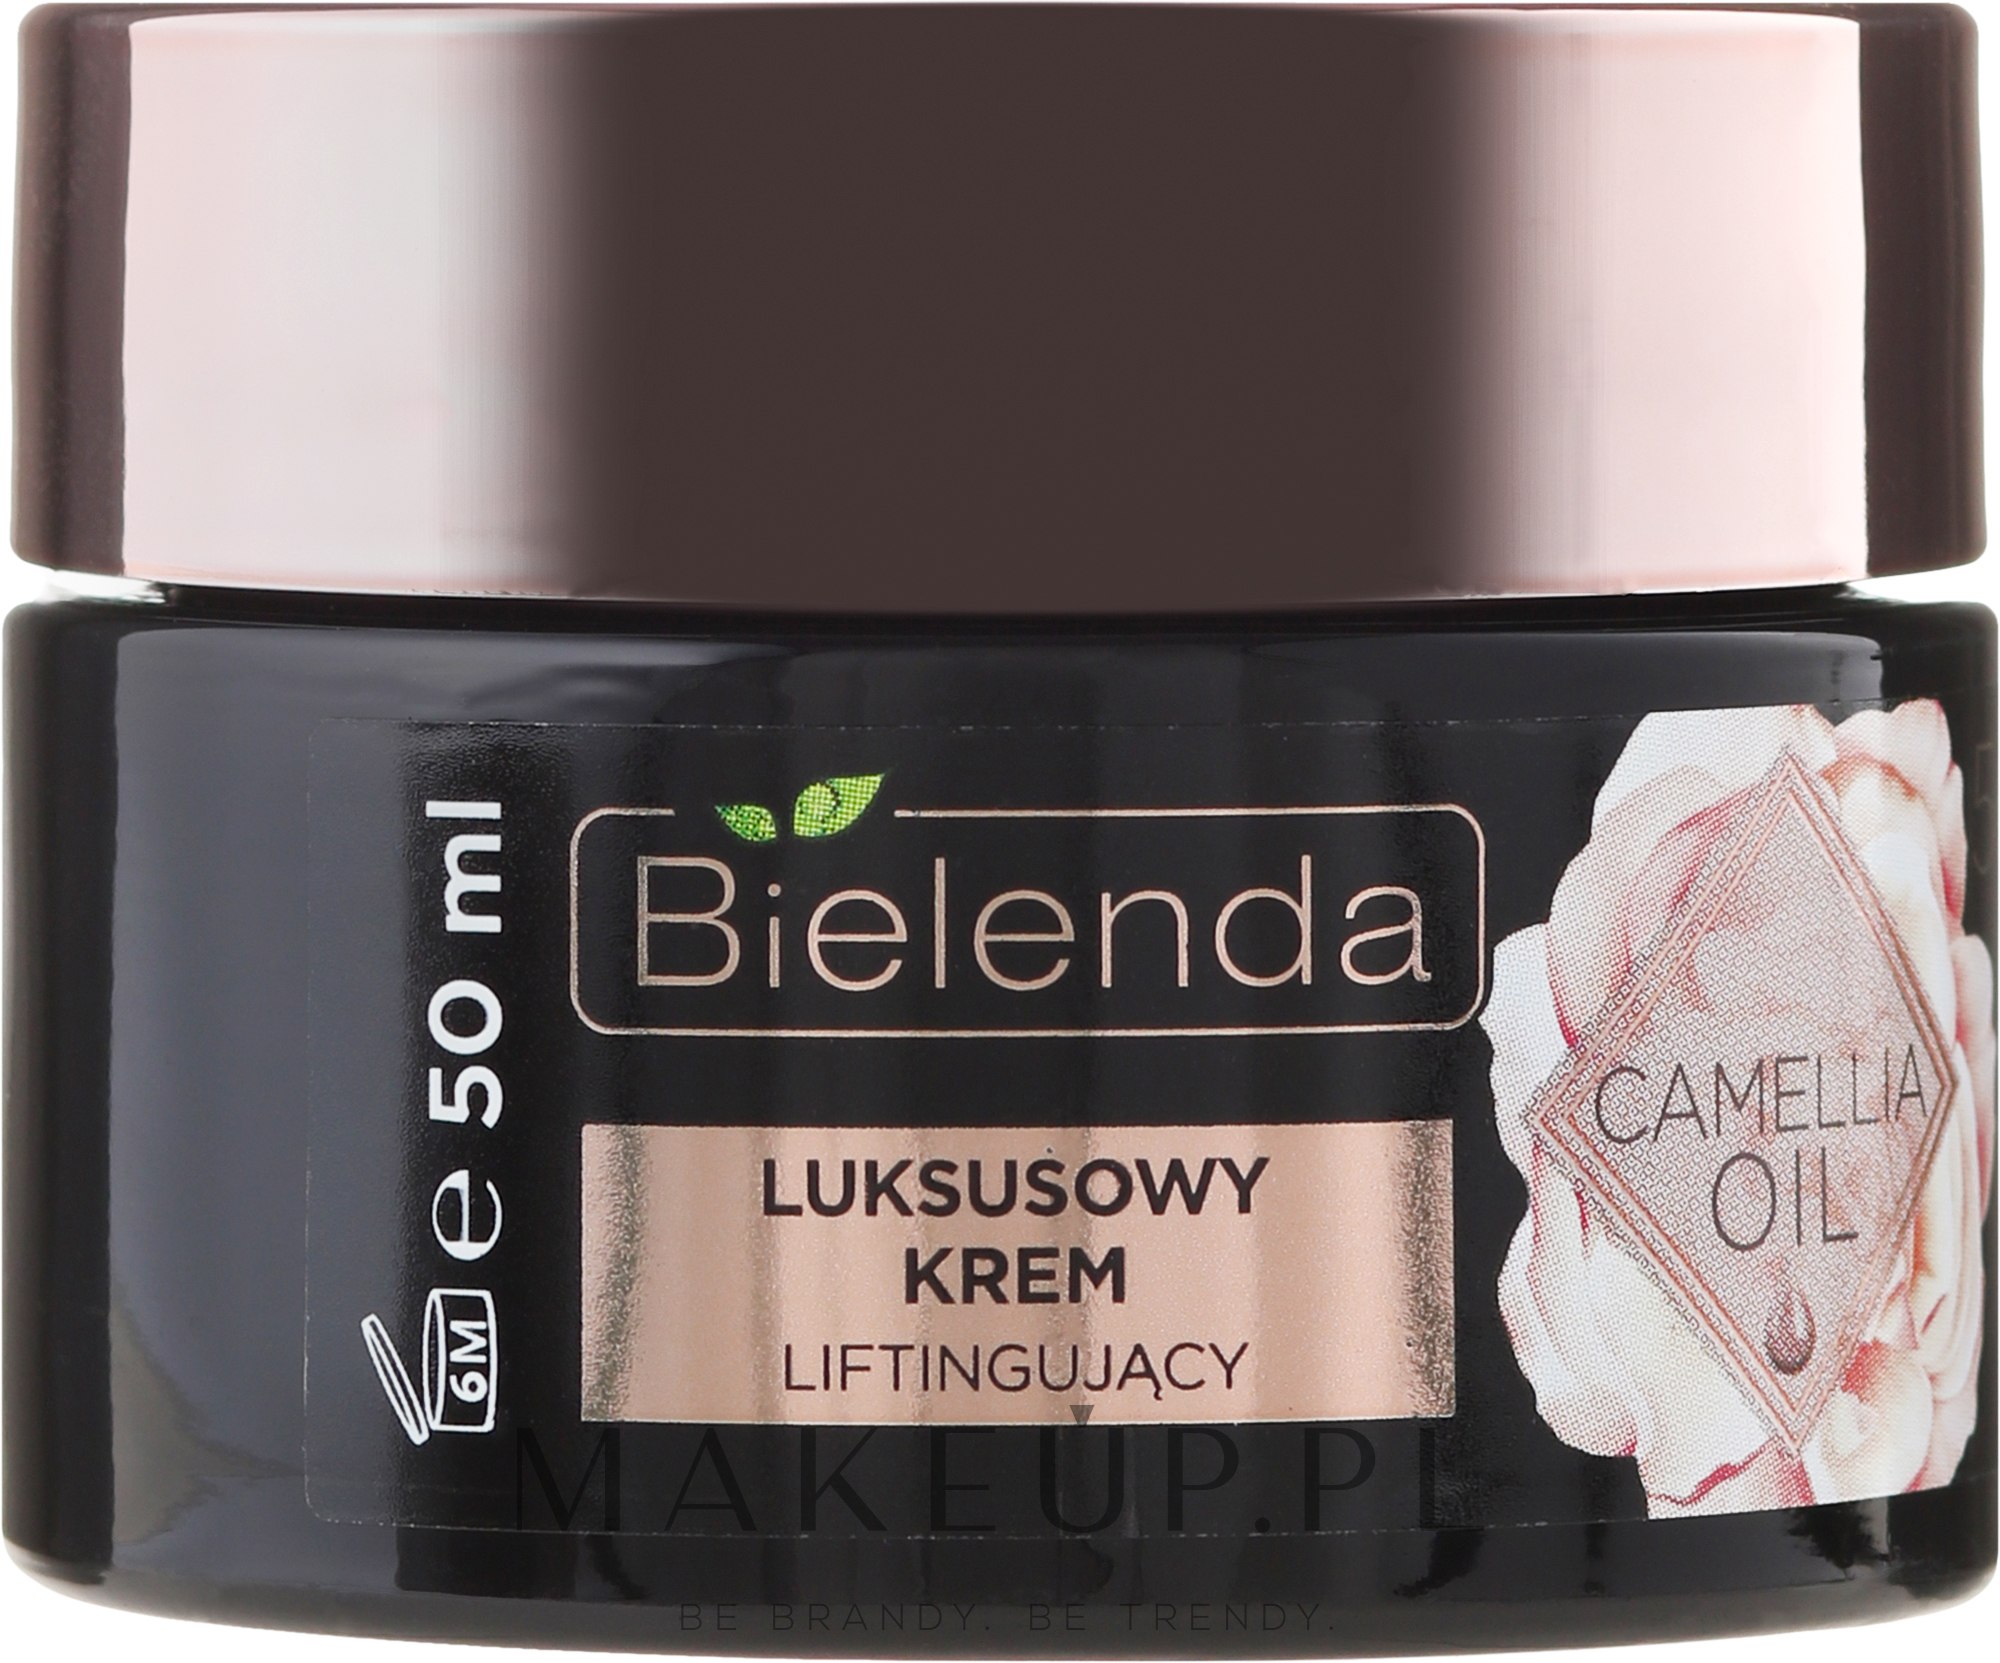 Luksusowy krem liftingujący 50+ na dzień i noc - Bielenda Camellia Oil — Zdjęcie 50 ml